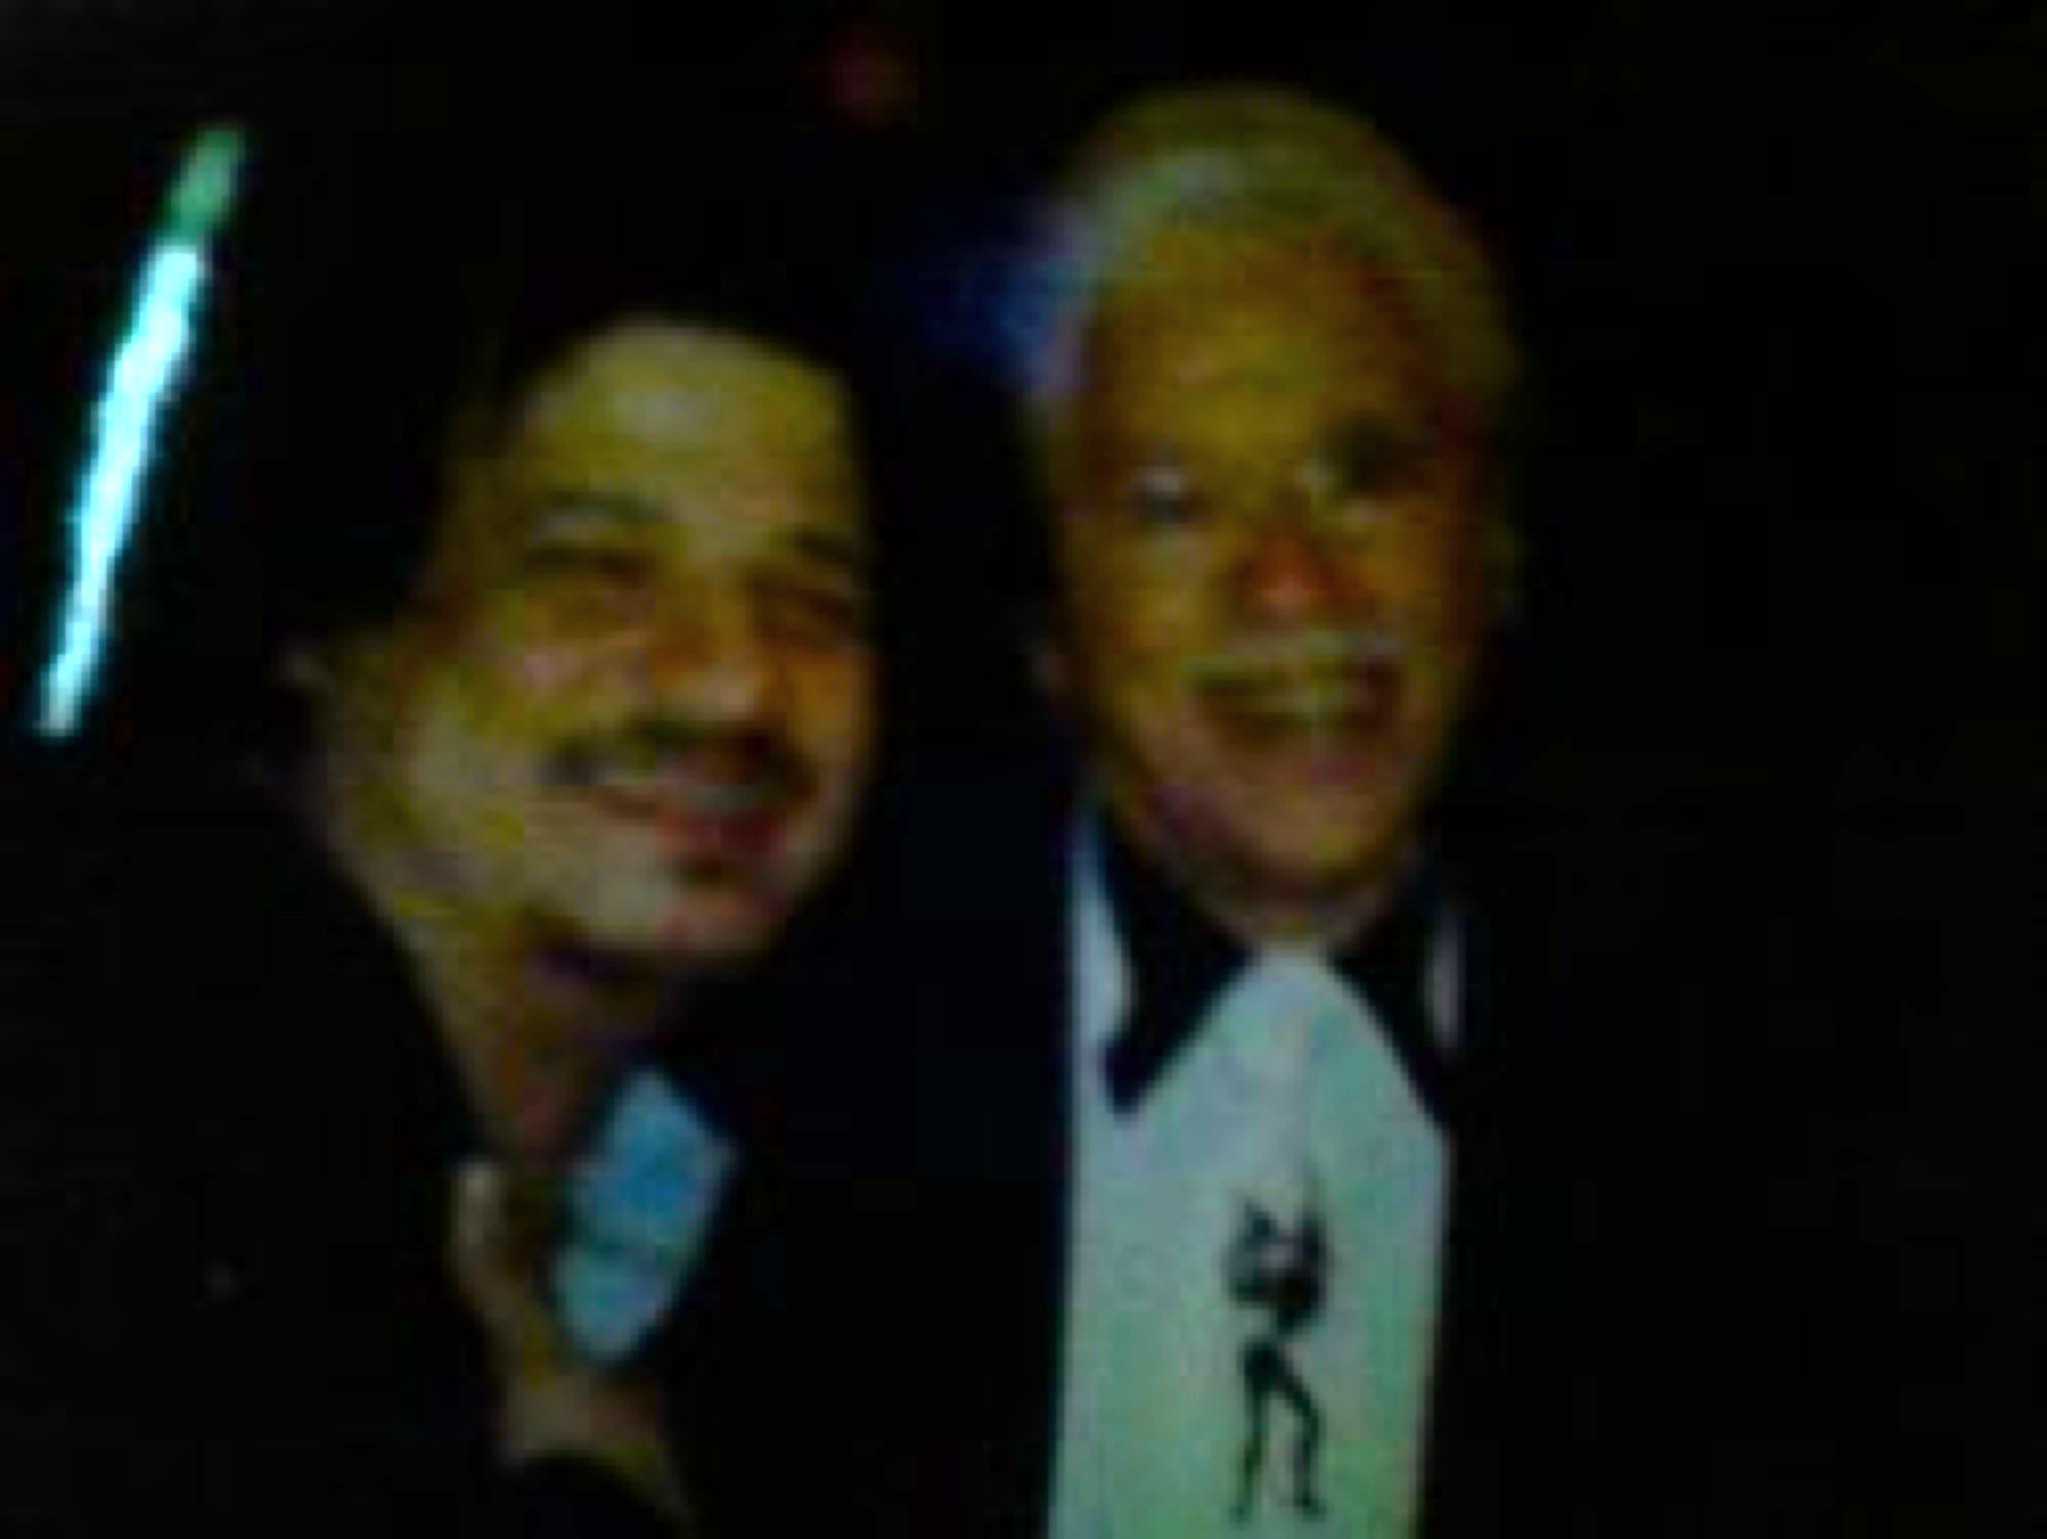 Francisco De Arriba/Jhonny Pacheco at El Cantante Premiere in New York. 2007